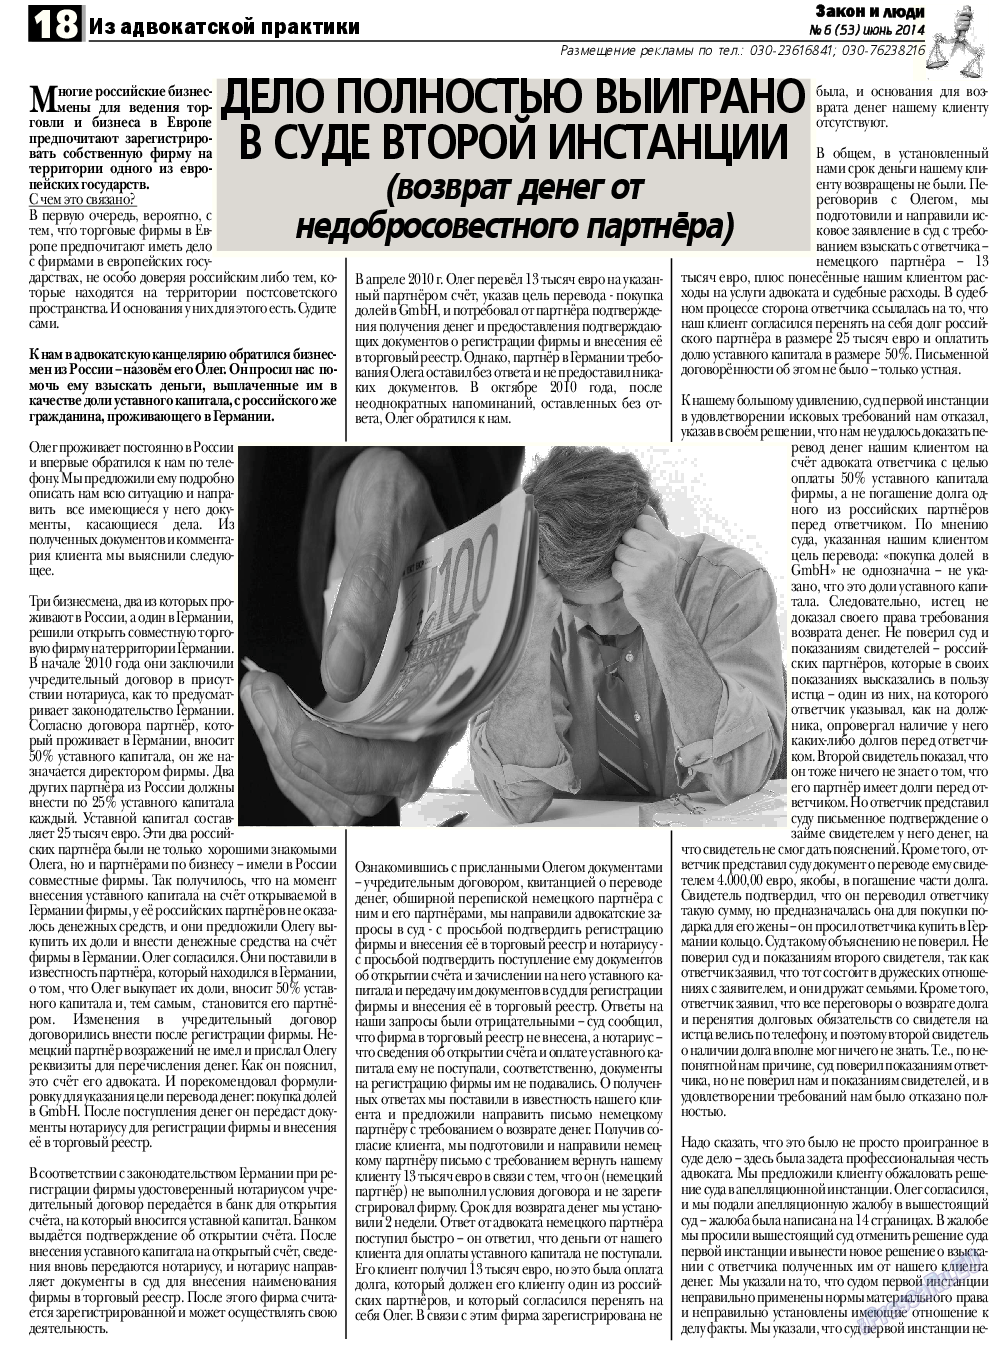 Закон и люди, газета. 2014 №6 стр.18